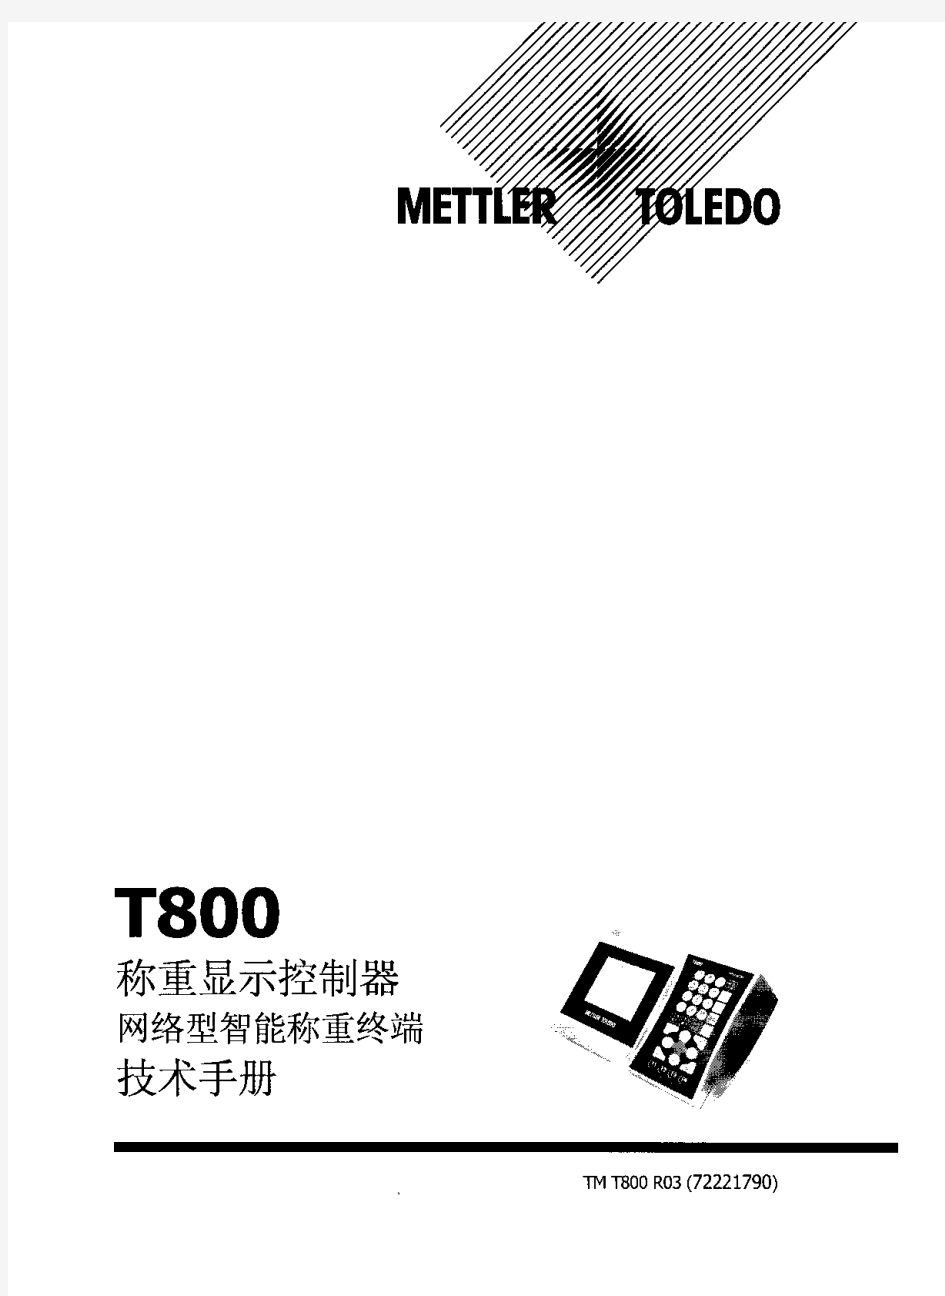 梅特勒托利多T800称重系统操作手册